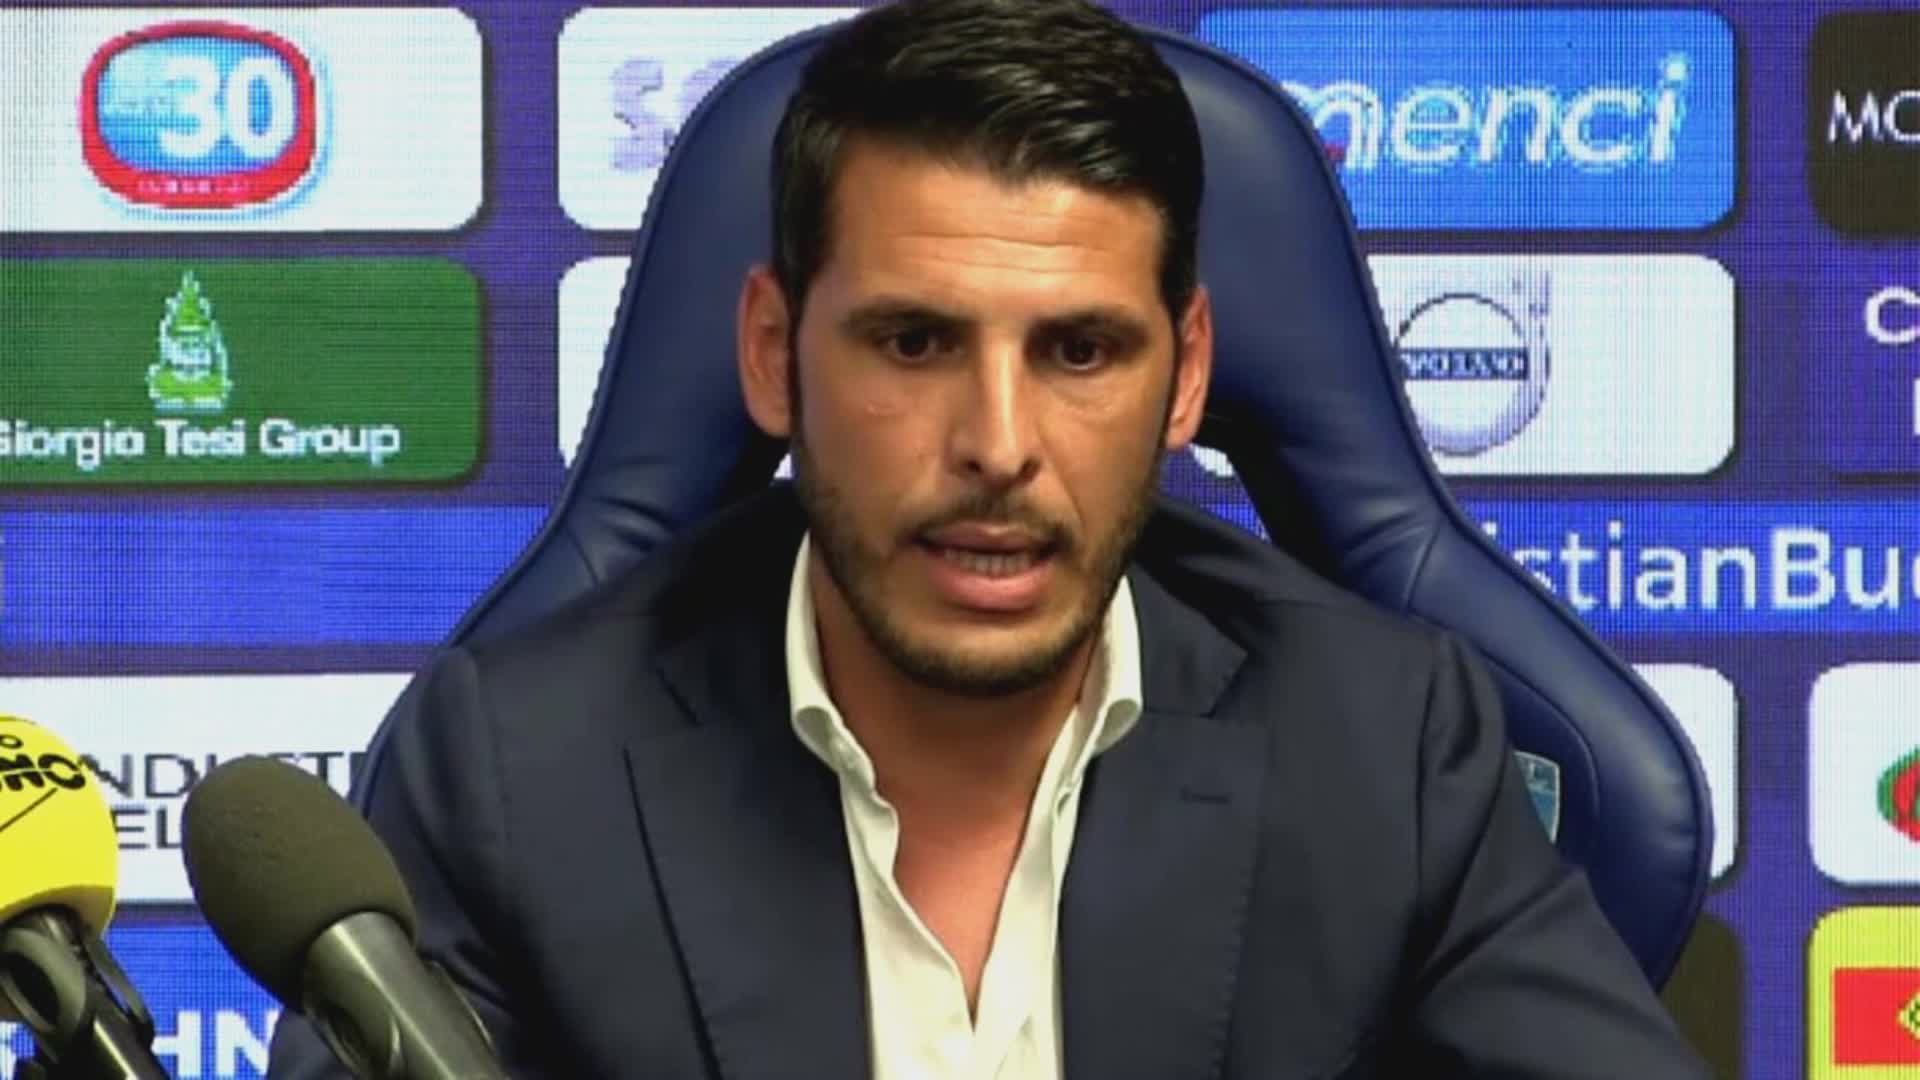 Ufficiale: Accardi ha risolto con l'Empoli. Può firmare con la Sampdoria: "Riparto per una nuova sfida"